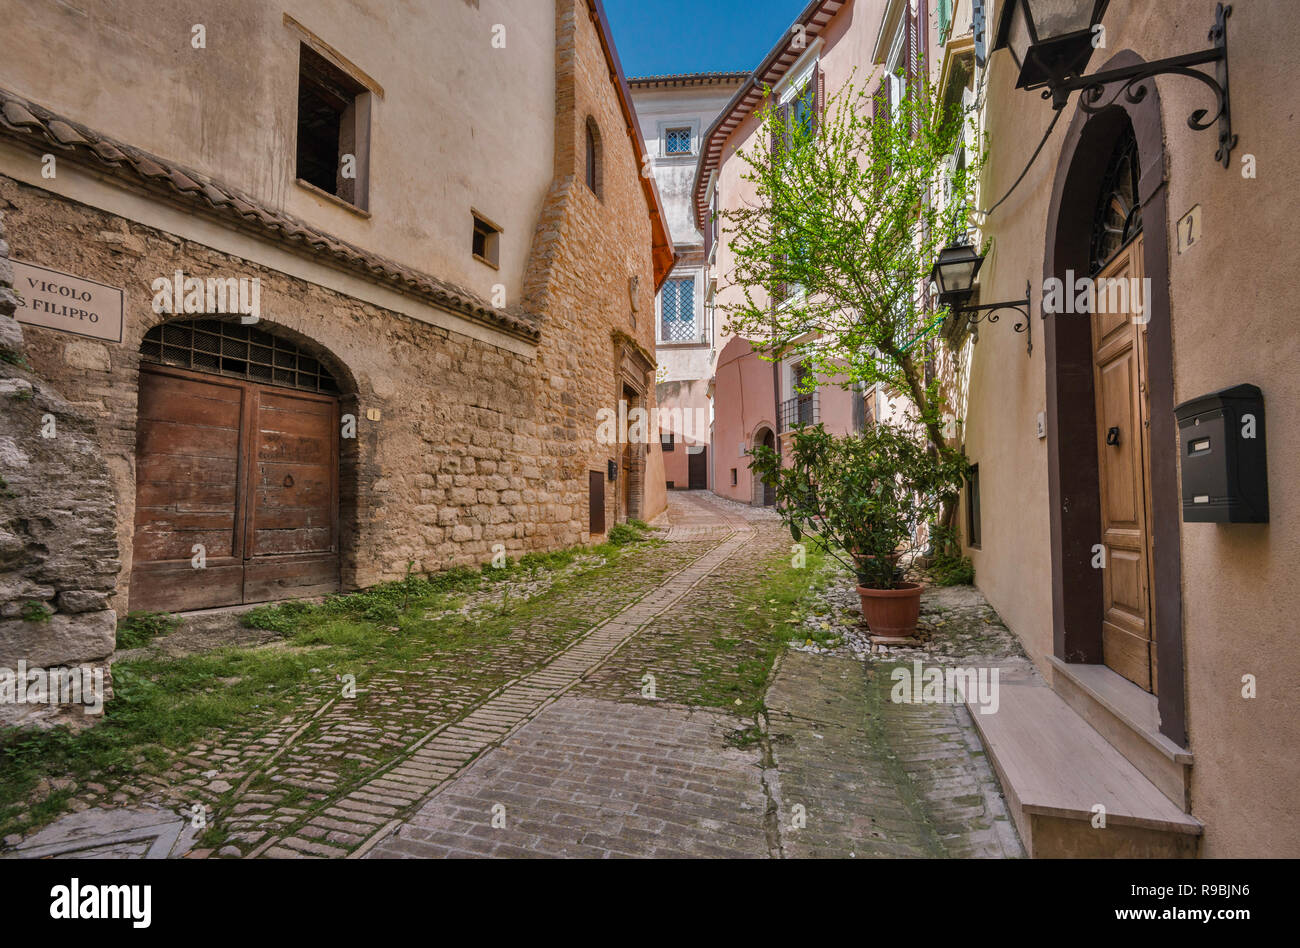 Vicolo San Fillippo, alley in historic center of Trevi, Umbria, Italy Stock Photo